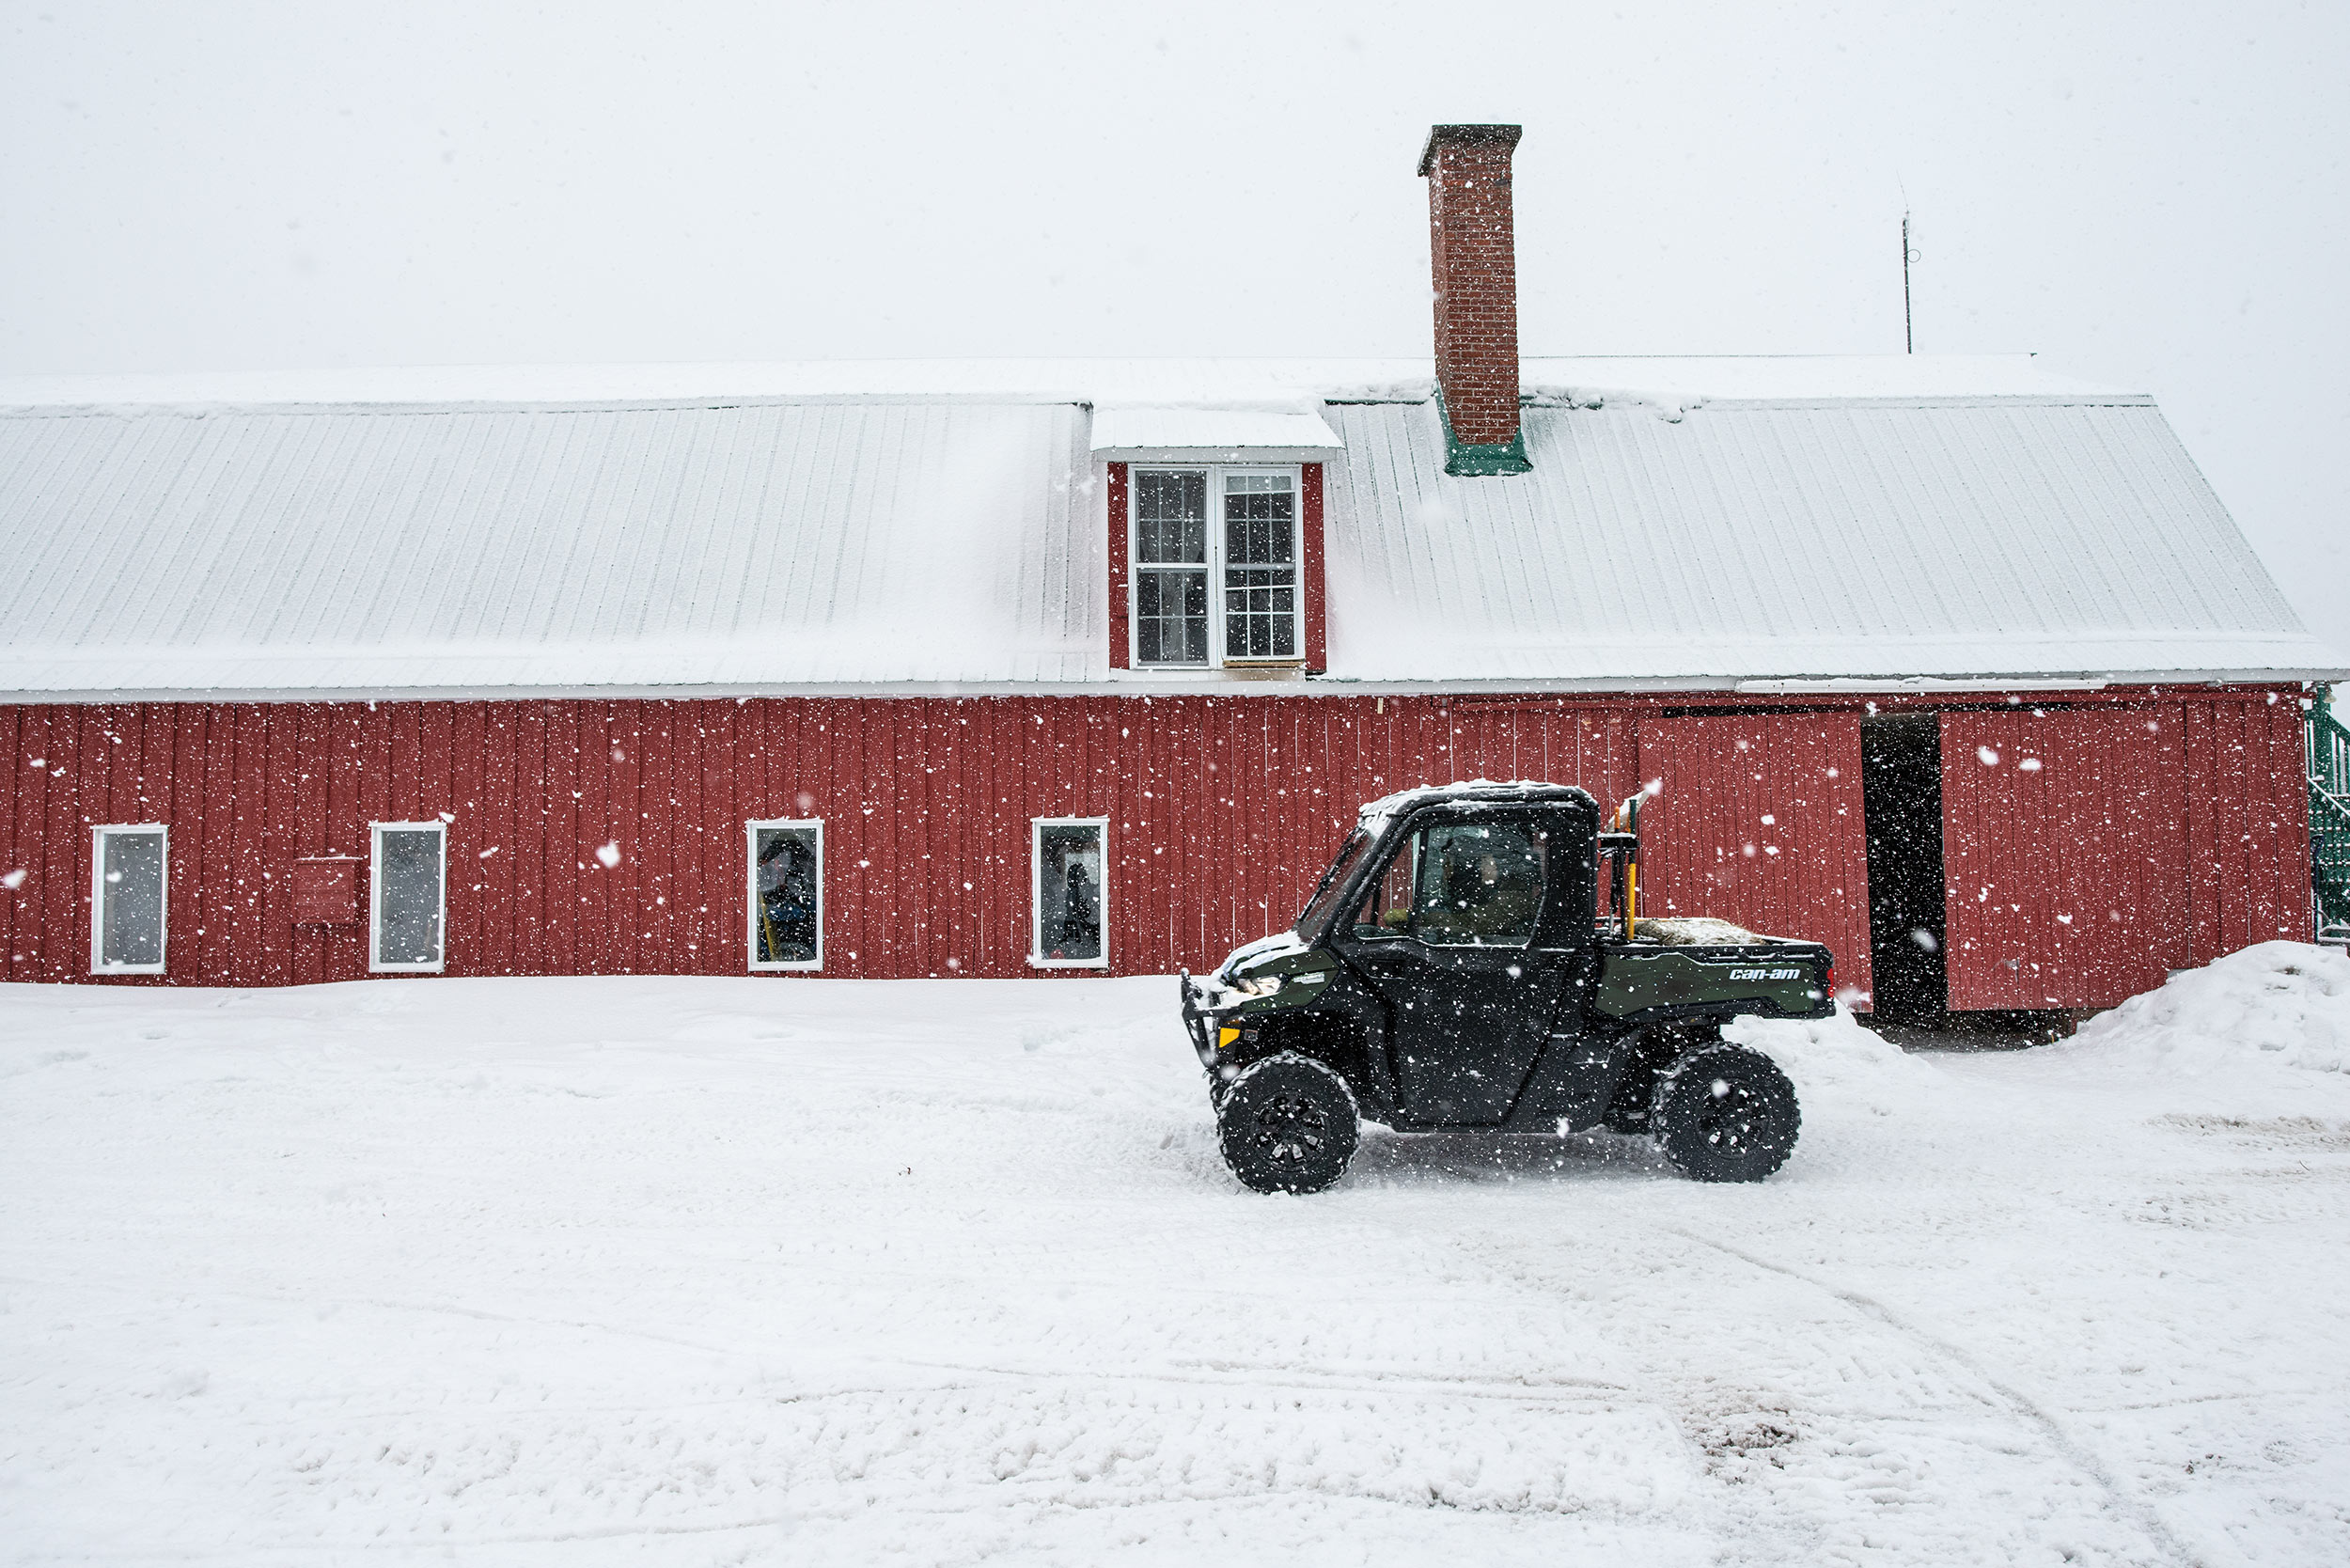 Traxter på snø på en gård